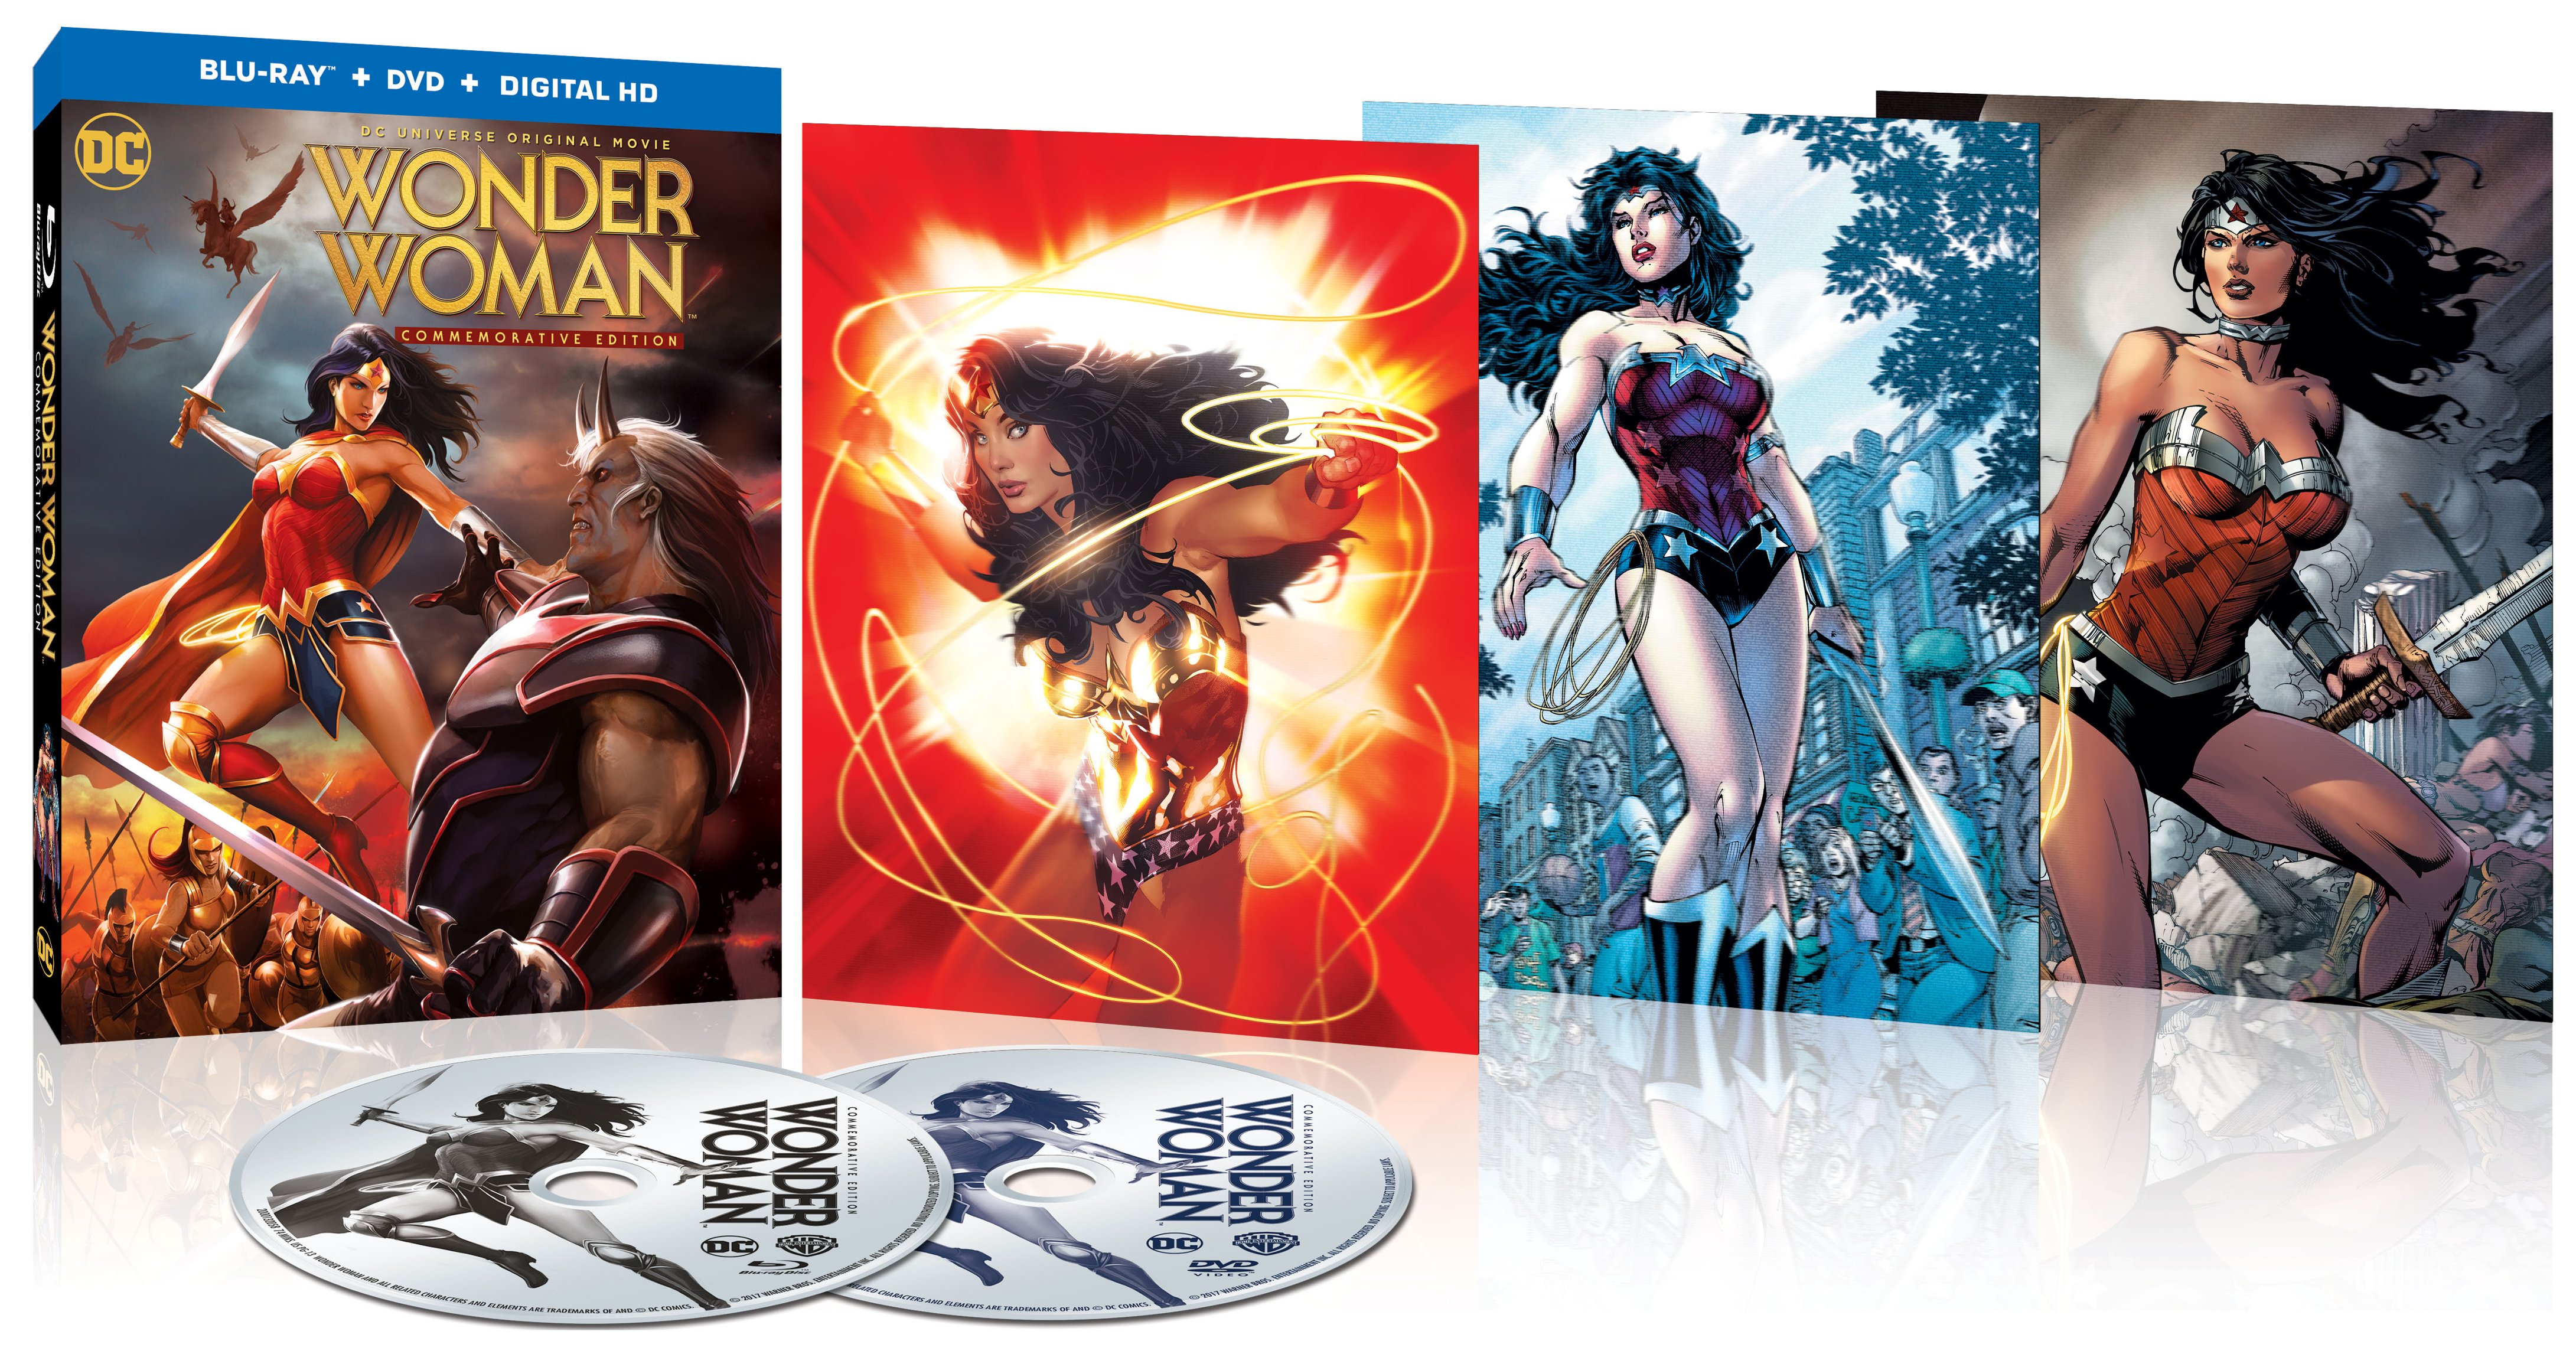 Blu-ray Review - Wonder Woman (2017)